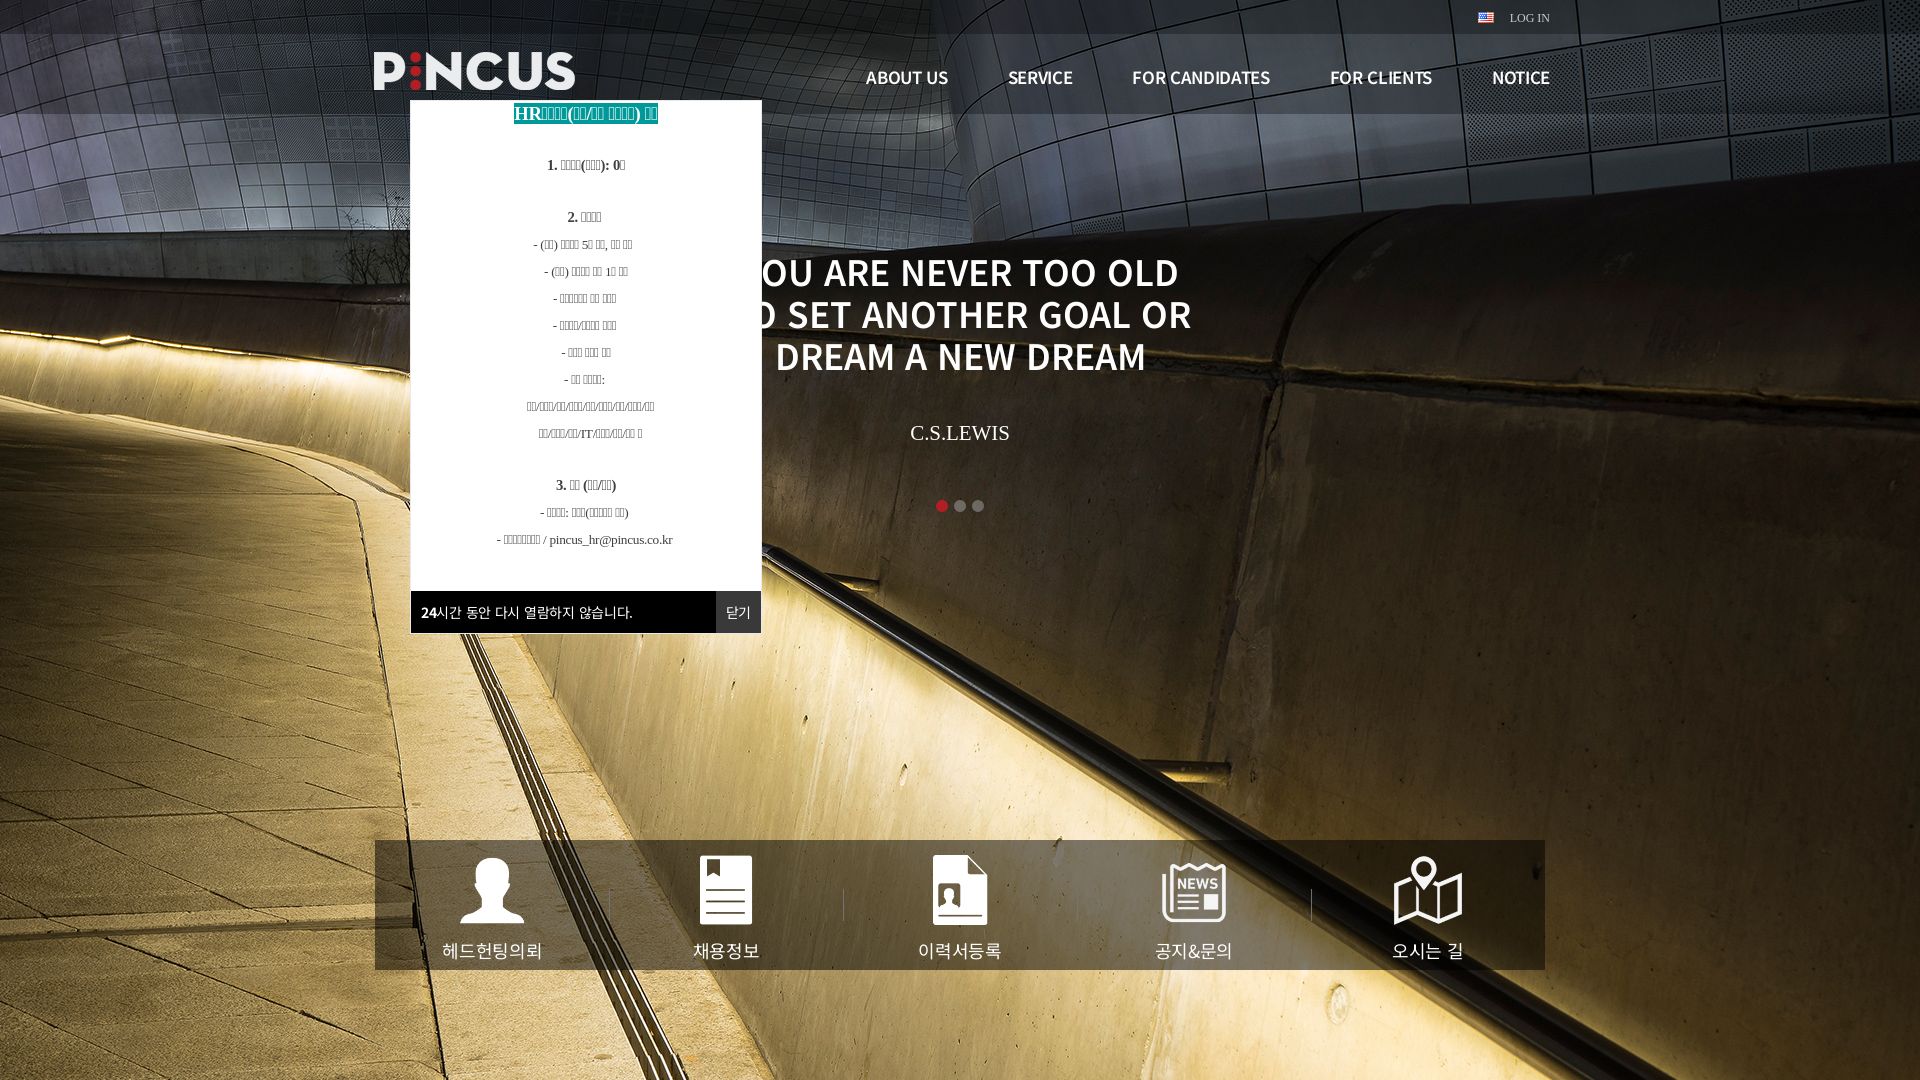 网站状态 pincus.co.kr 是  在线的